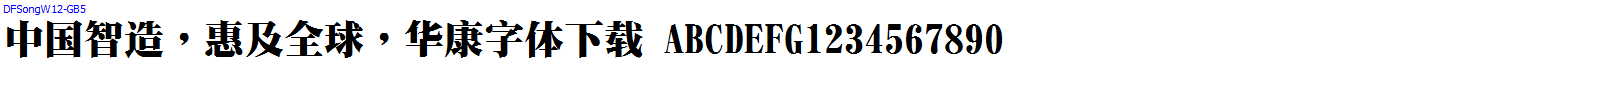 華康字體DFSongW12-GB5.ttc